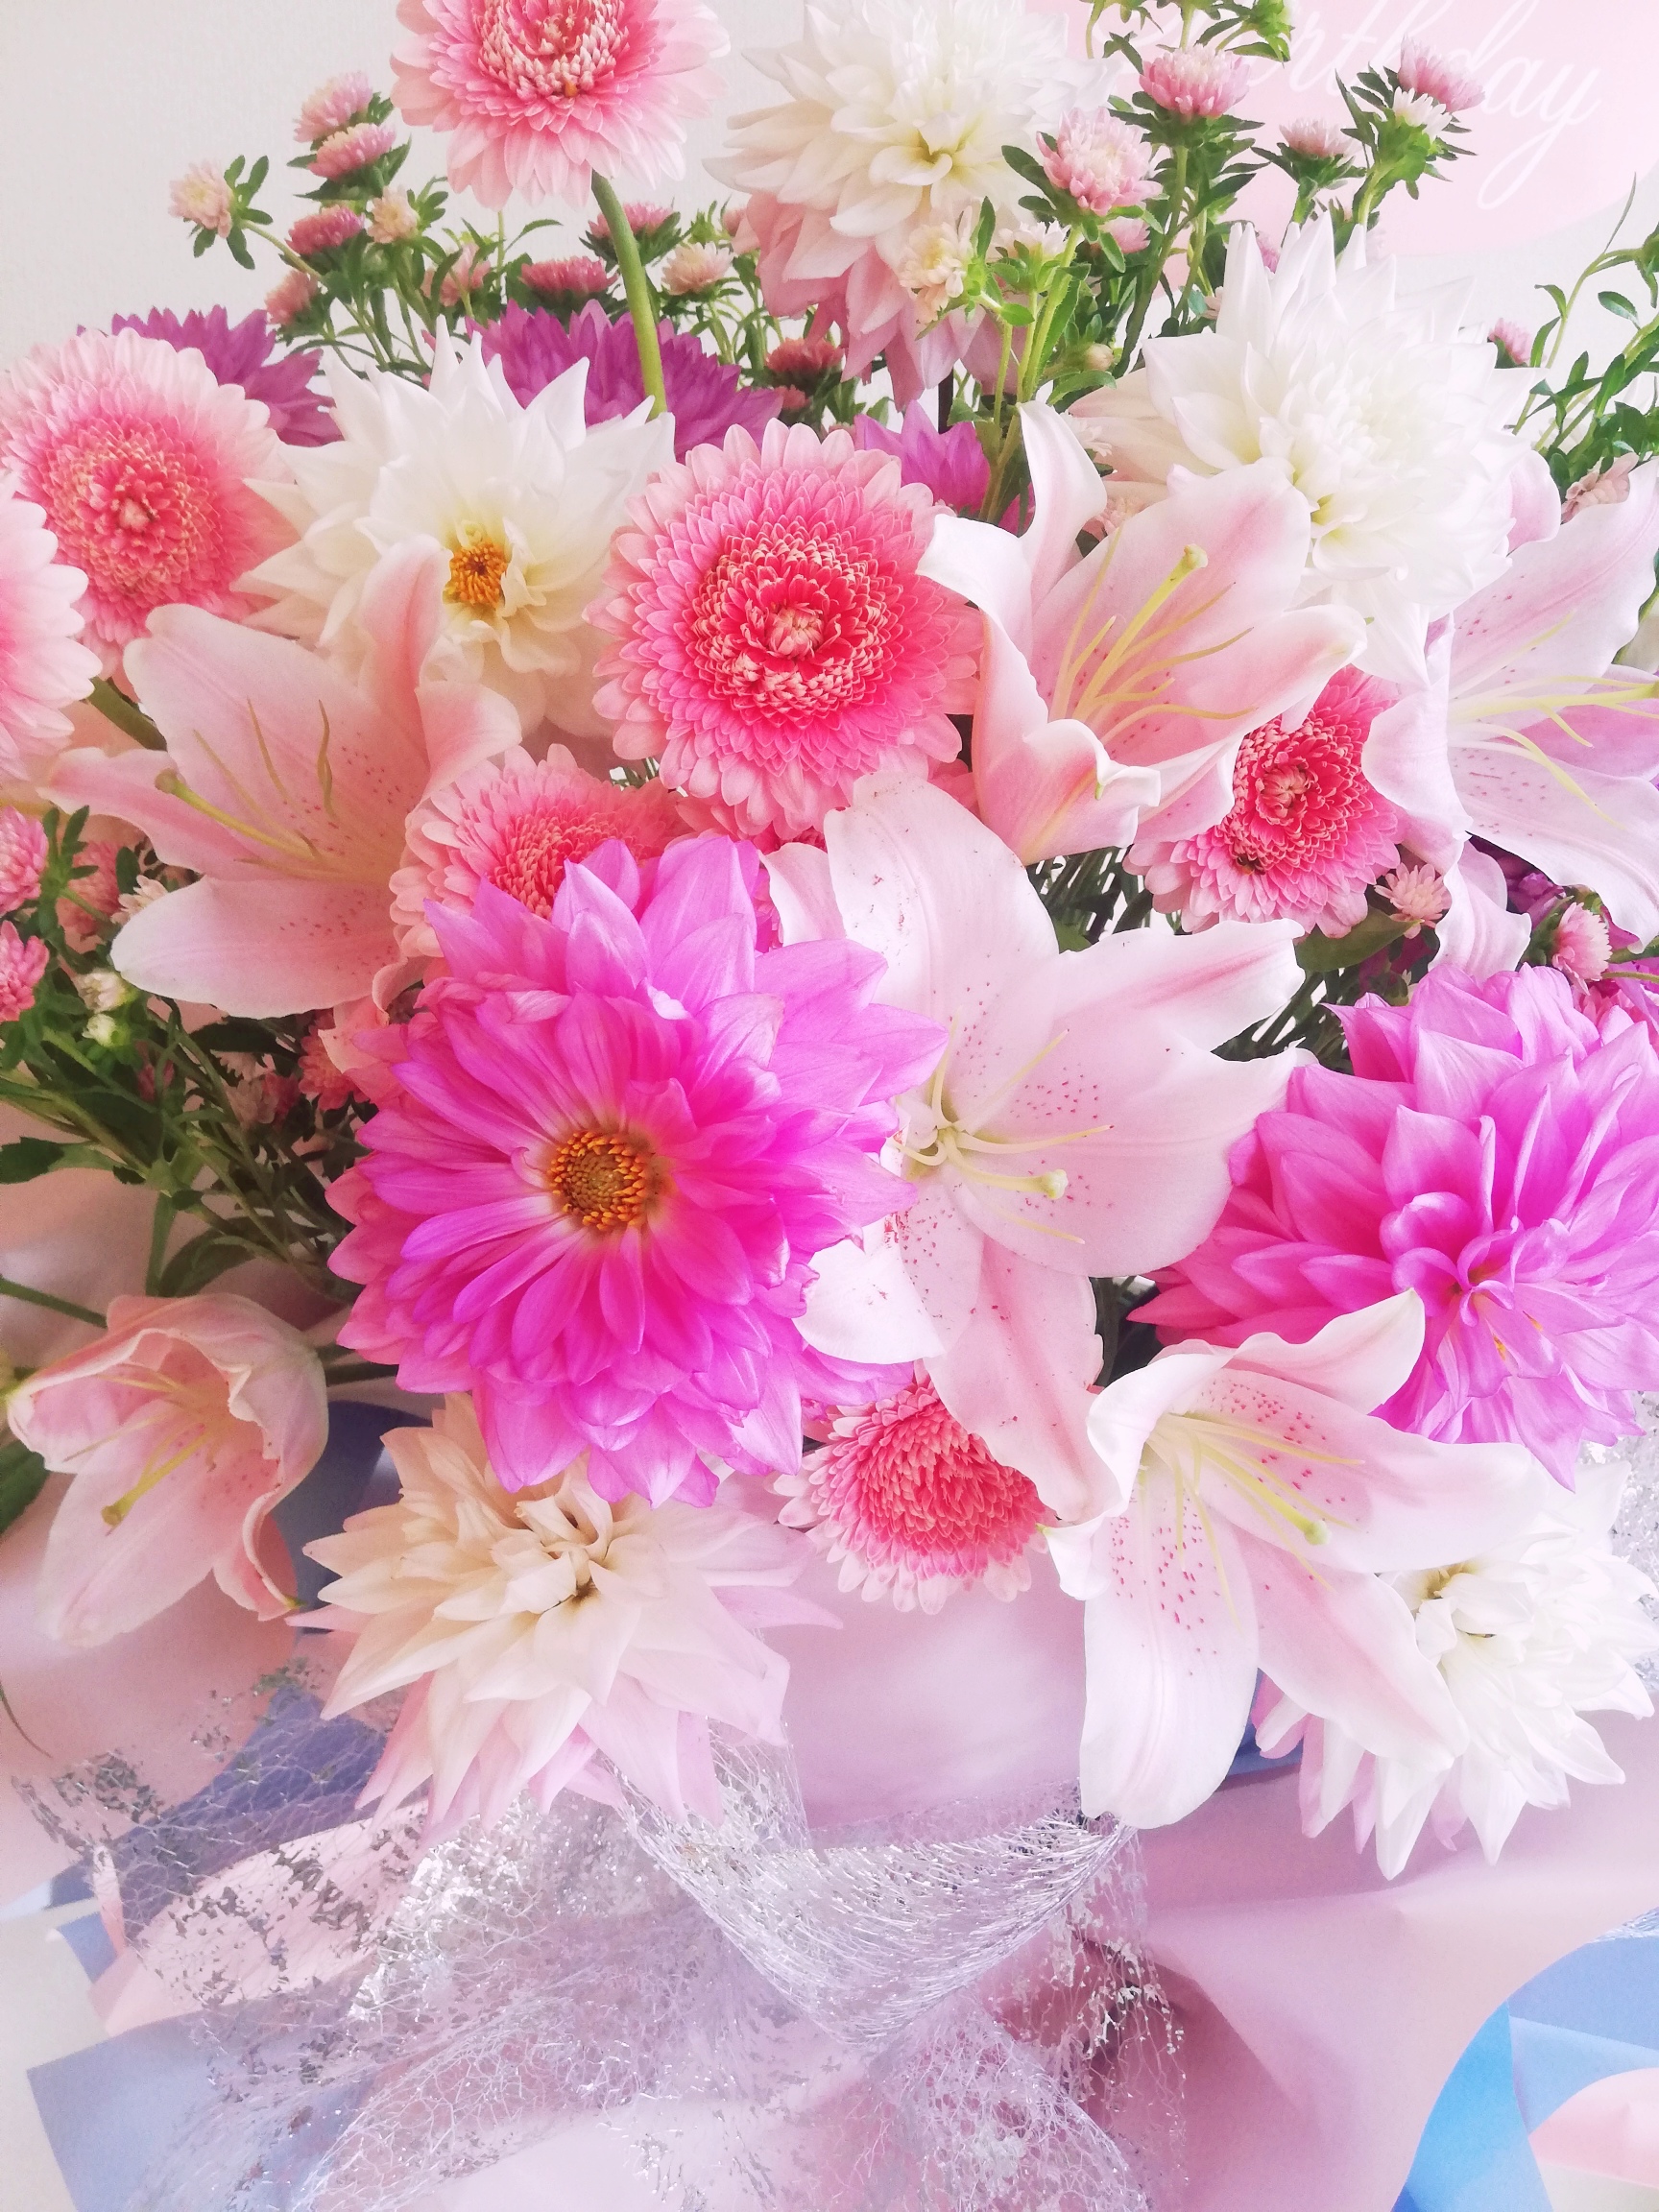 花屋】花家shinyoshi / 【 フラワースタンド 】 喜ばれる花 開店祝い ・ 開業祝い ・ 開院祝い ・ 就任祝い ・ 周年祝い ・ 誕生祝い  ・ コンサート祝い ・ 出演祝い ・ 発表会祝い / Standflower / standflower / Standflowers /  standflowers /